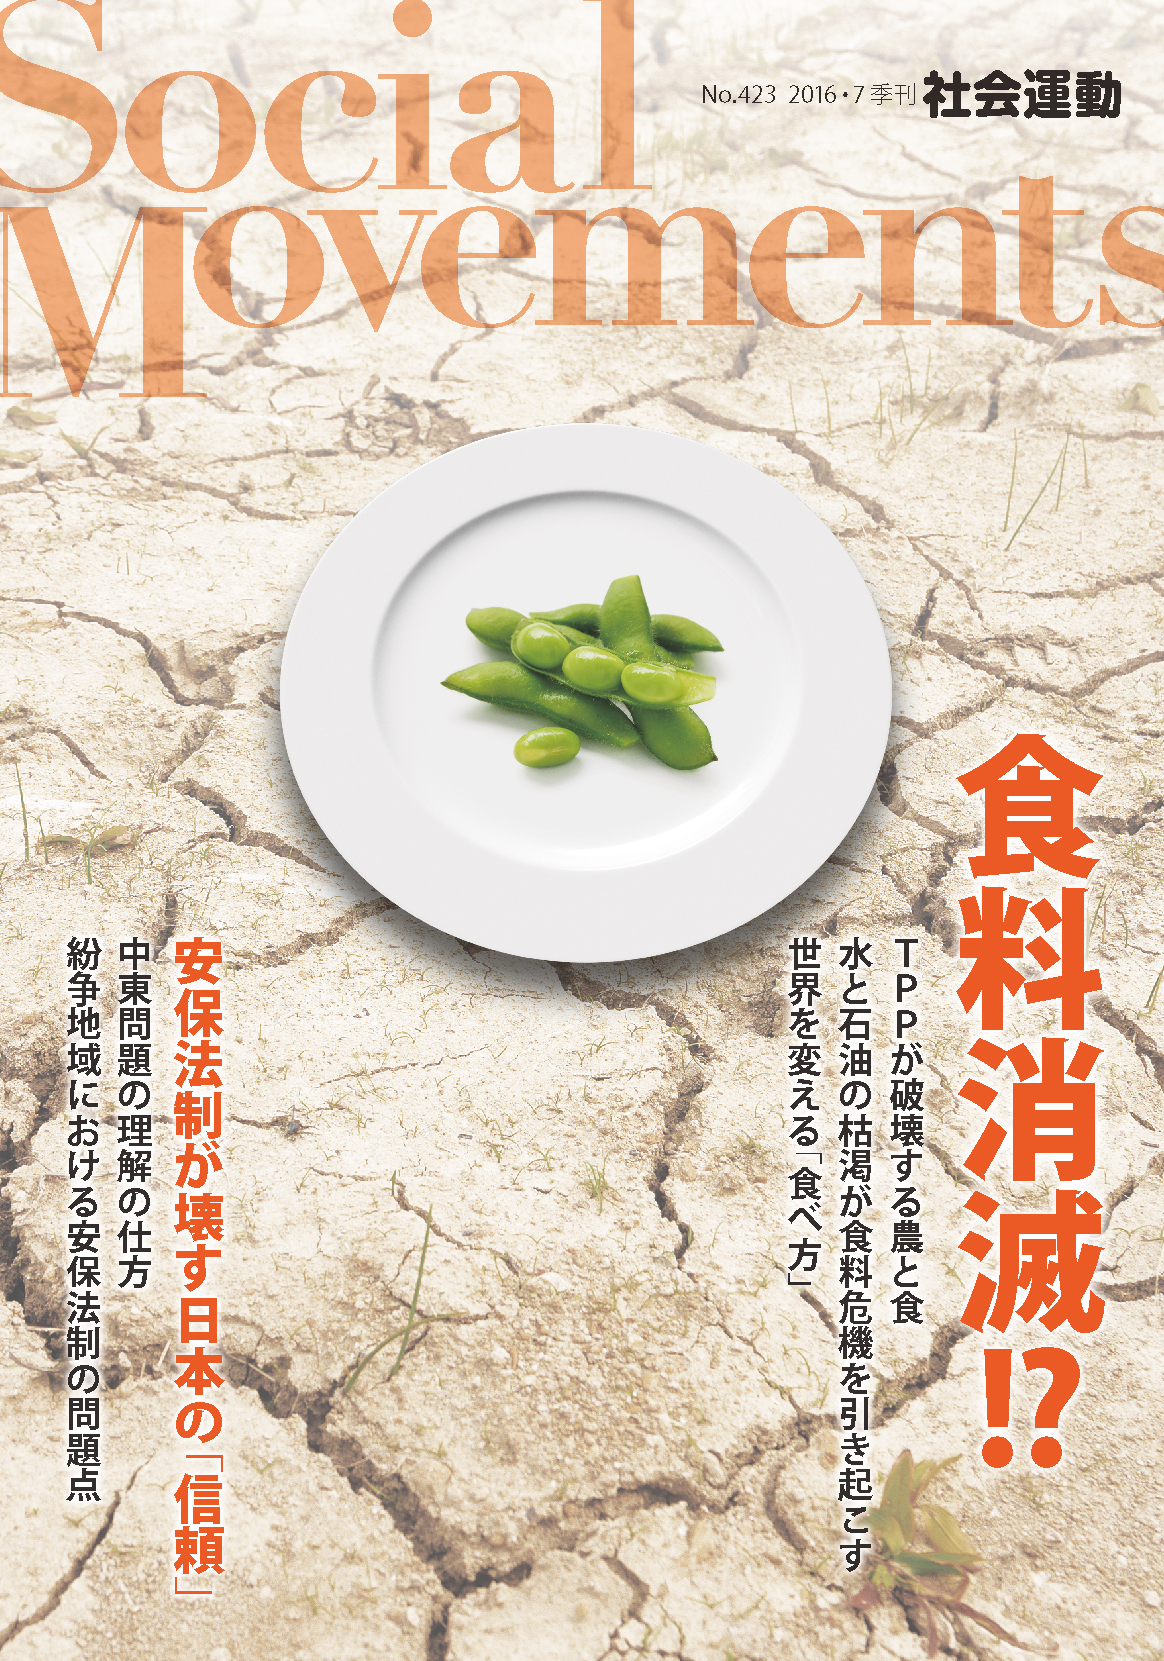 季刊『社会運動』　2016年7月【423号】　特集：食料消滅!?